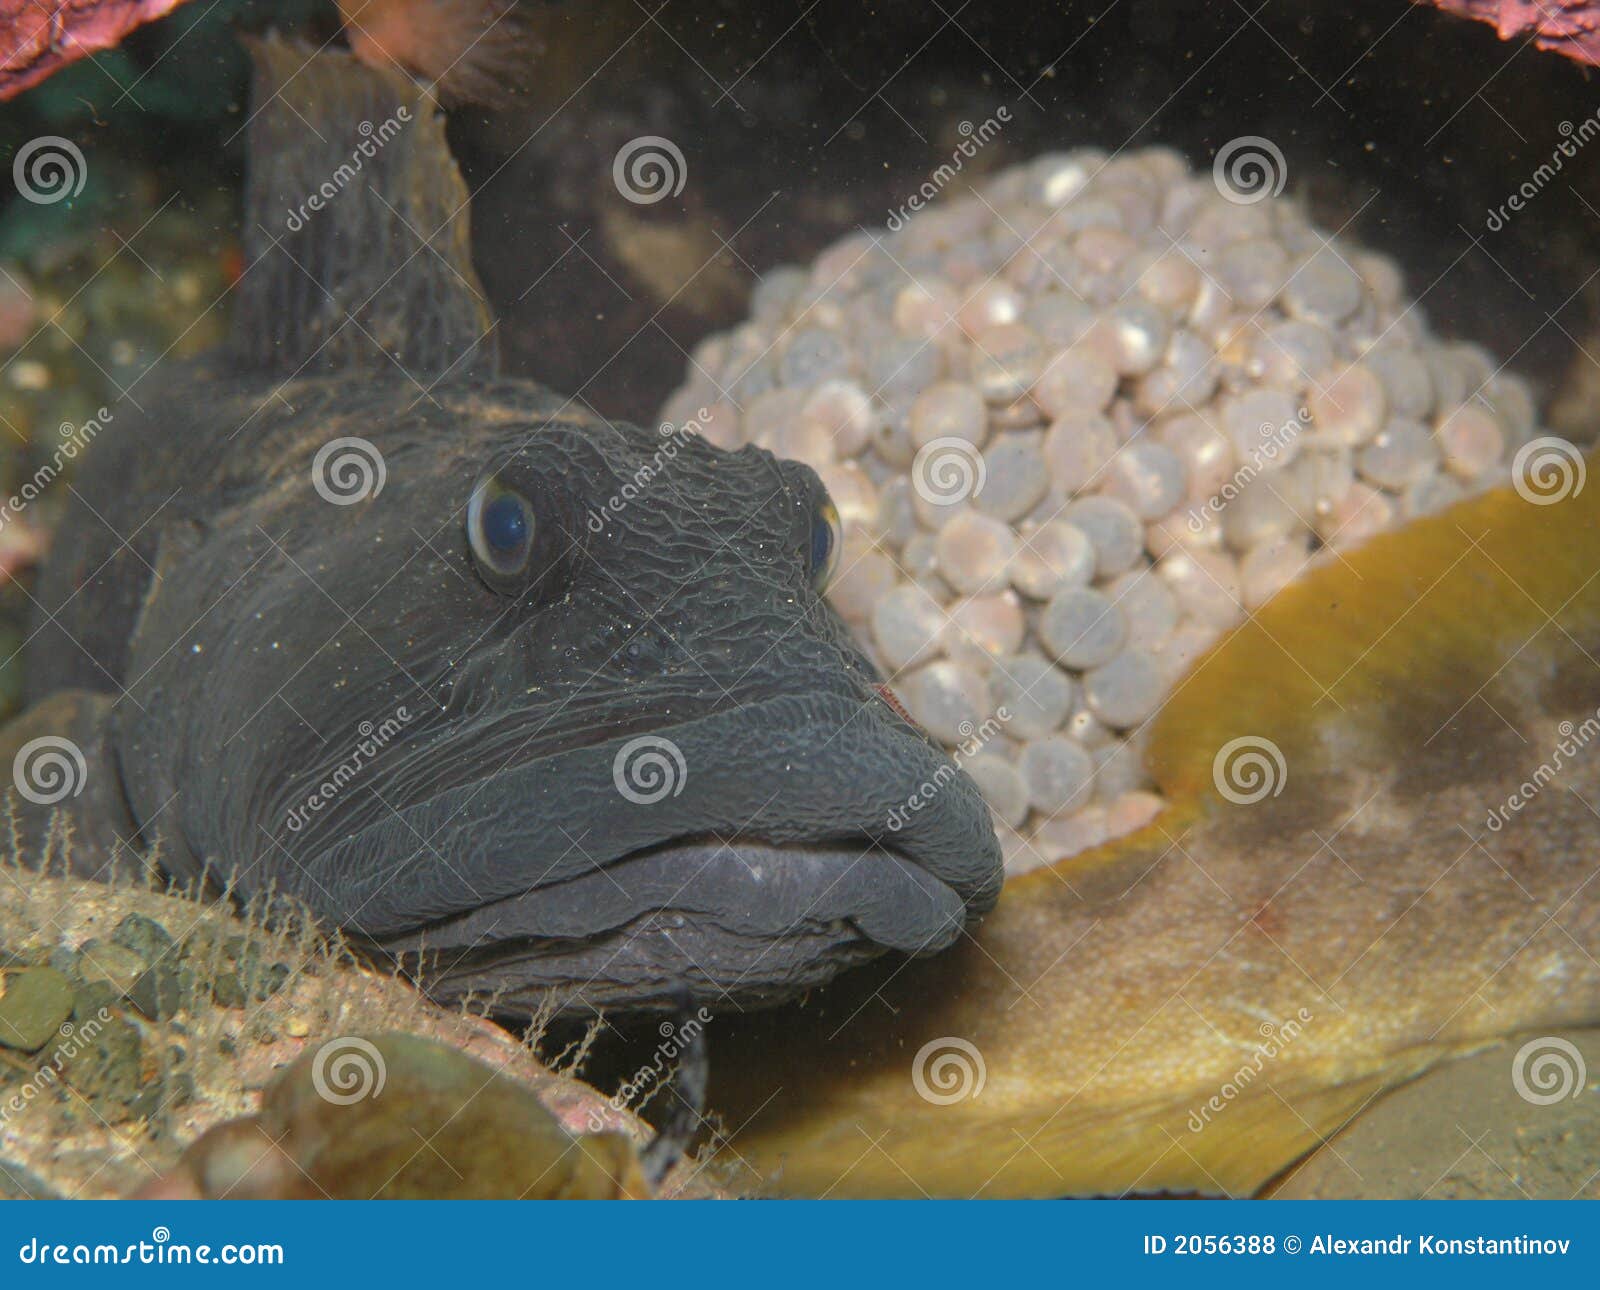 eel pout guarding its' eggs.